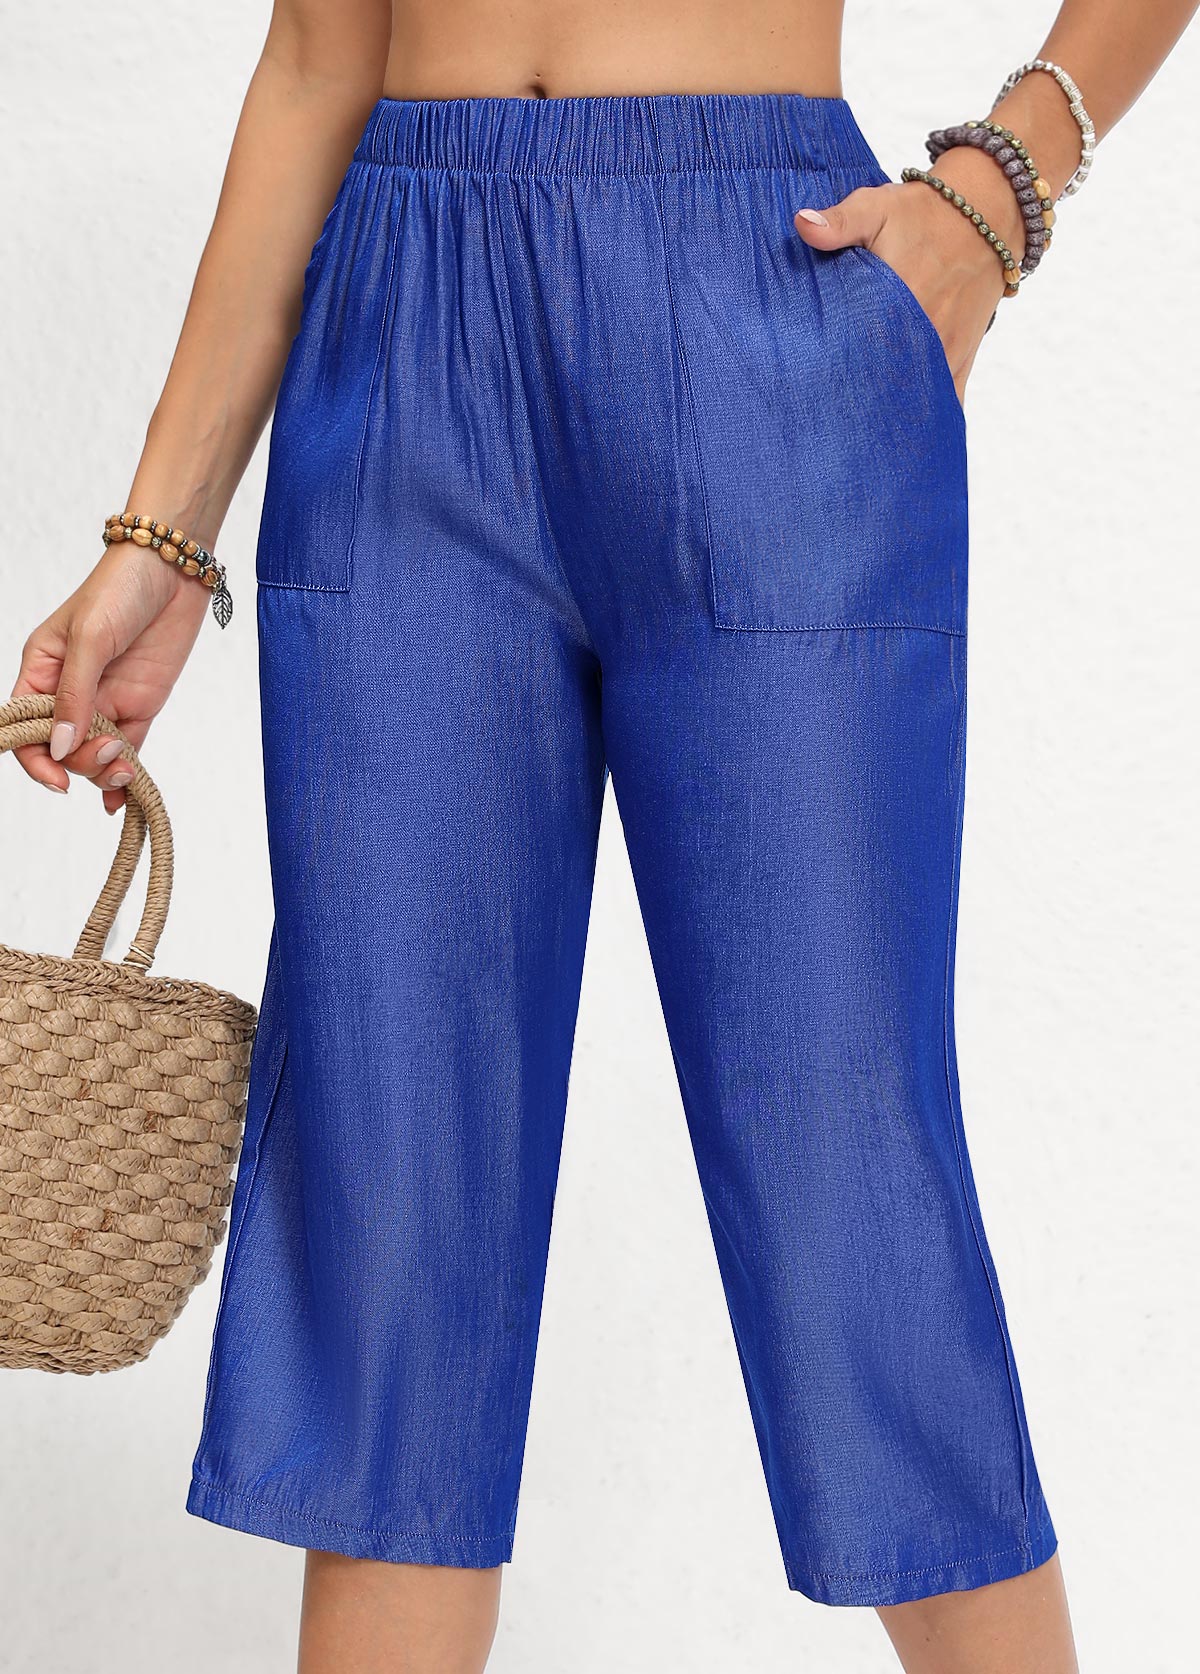 pantalon bleu denim à double poches latérales et taille élastique